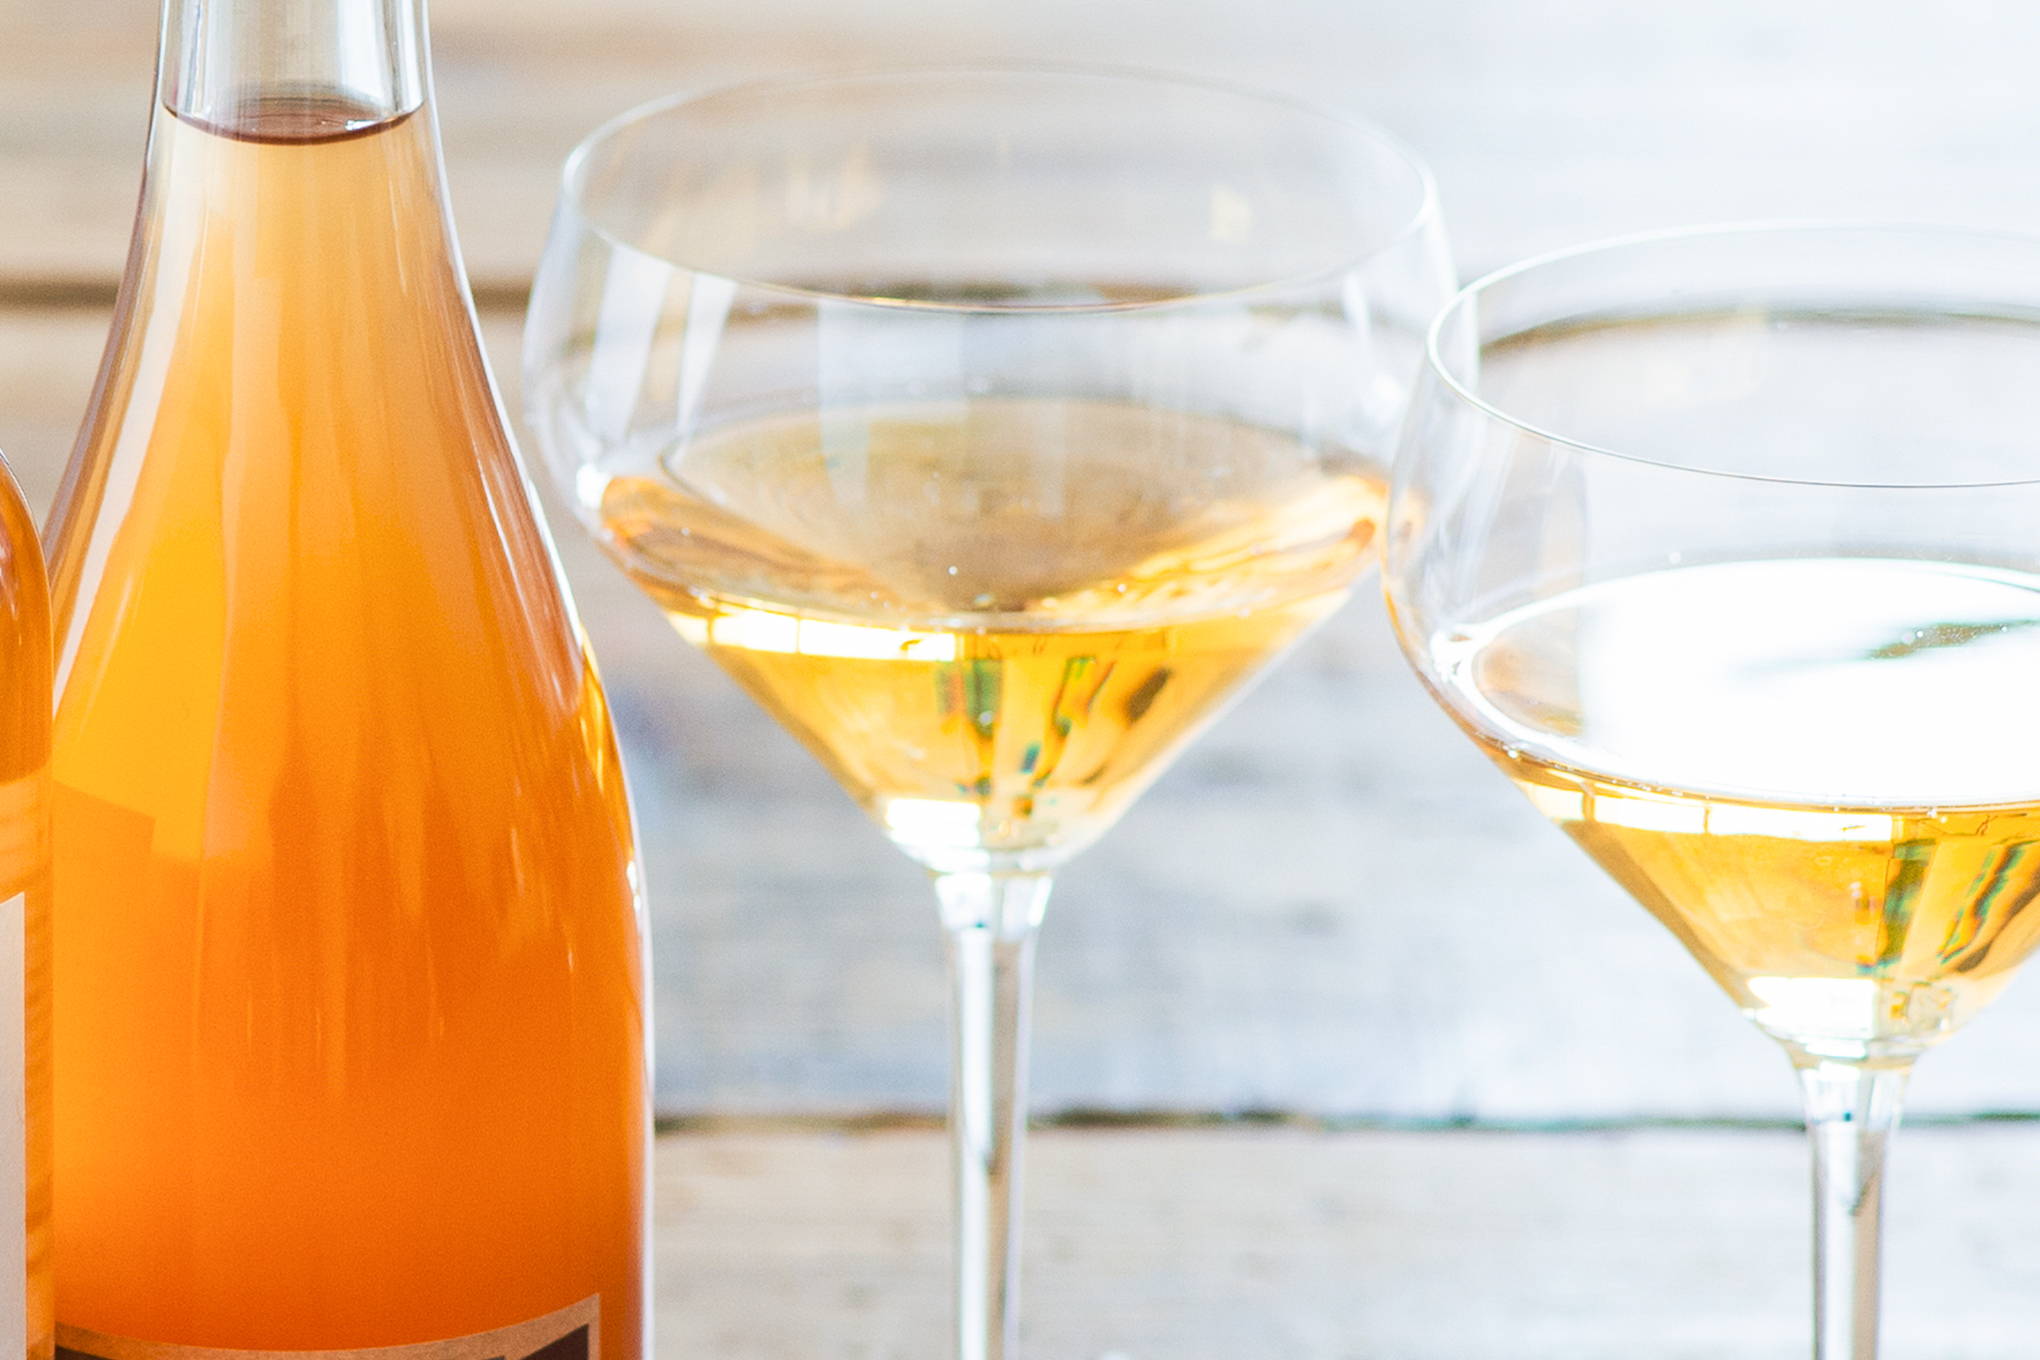 オレンジワインとは何か？ をあらためて。美しい色と味わい深さ、使い勝手の良さのヒミツとは？